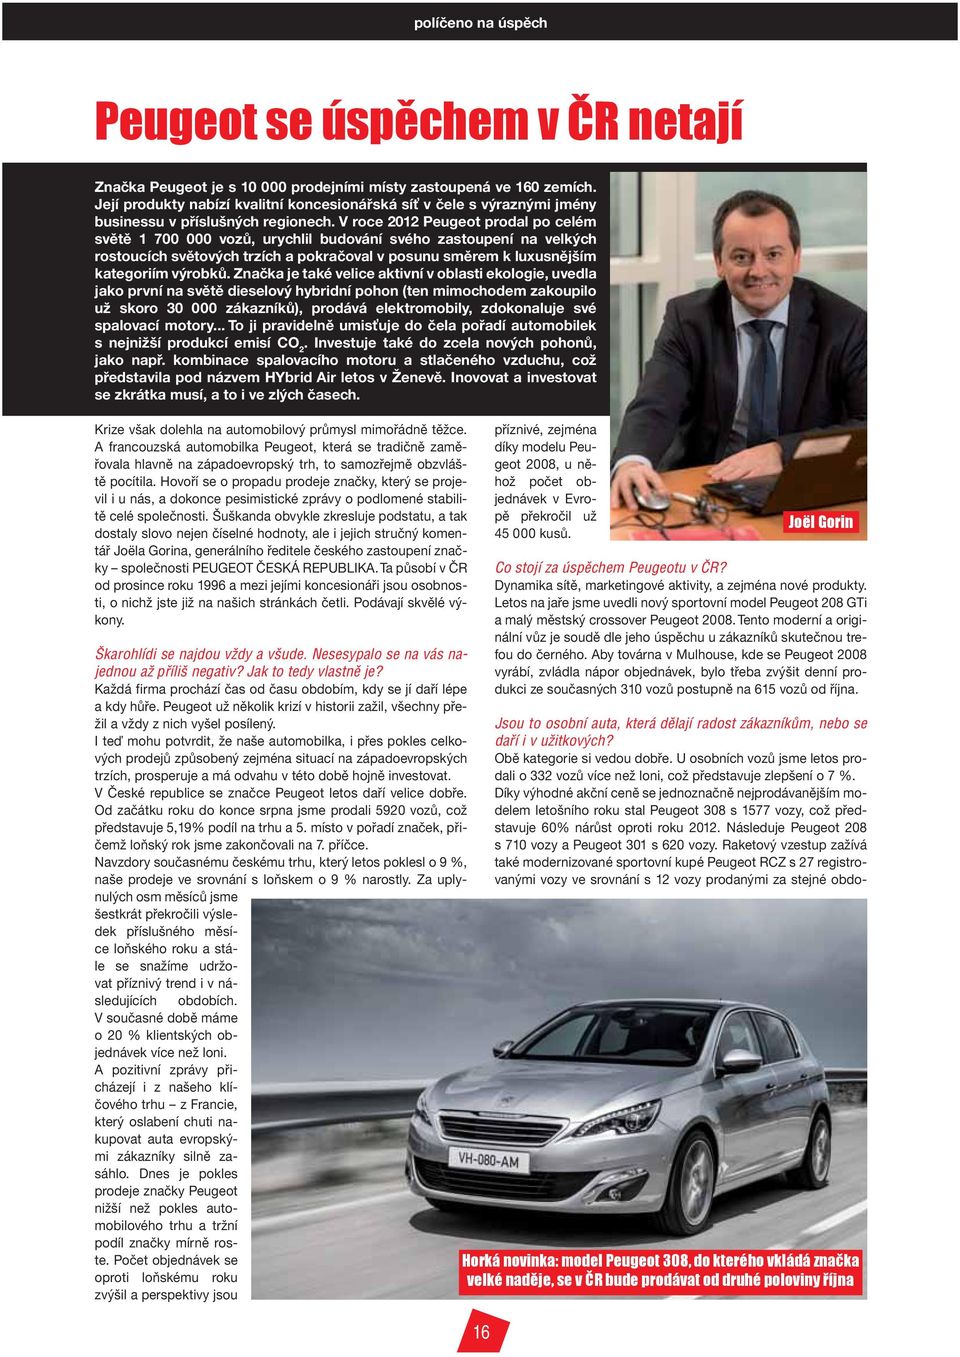 V roce 2012 Peugeot prodal po celém světě 1 700 000 vozů, urychlil budování svého zastoupení na velkých rostoucích světových trzích a pokračoval v posunu směrem k luxusnějším kategoriím výrobků.